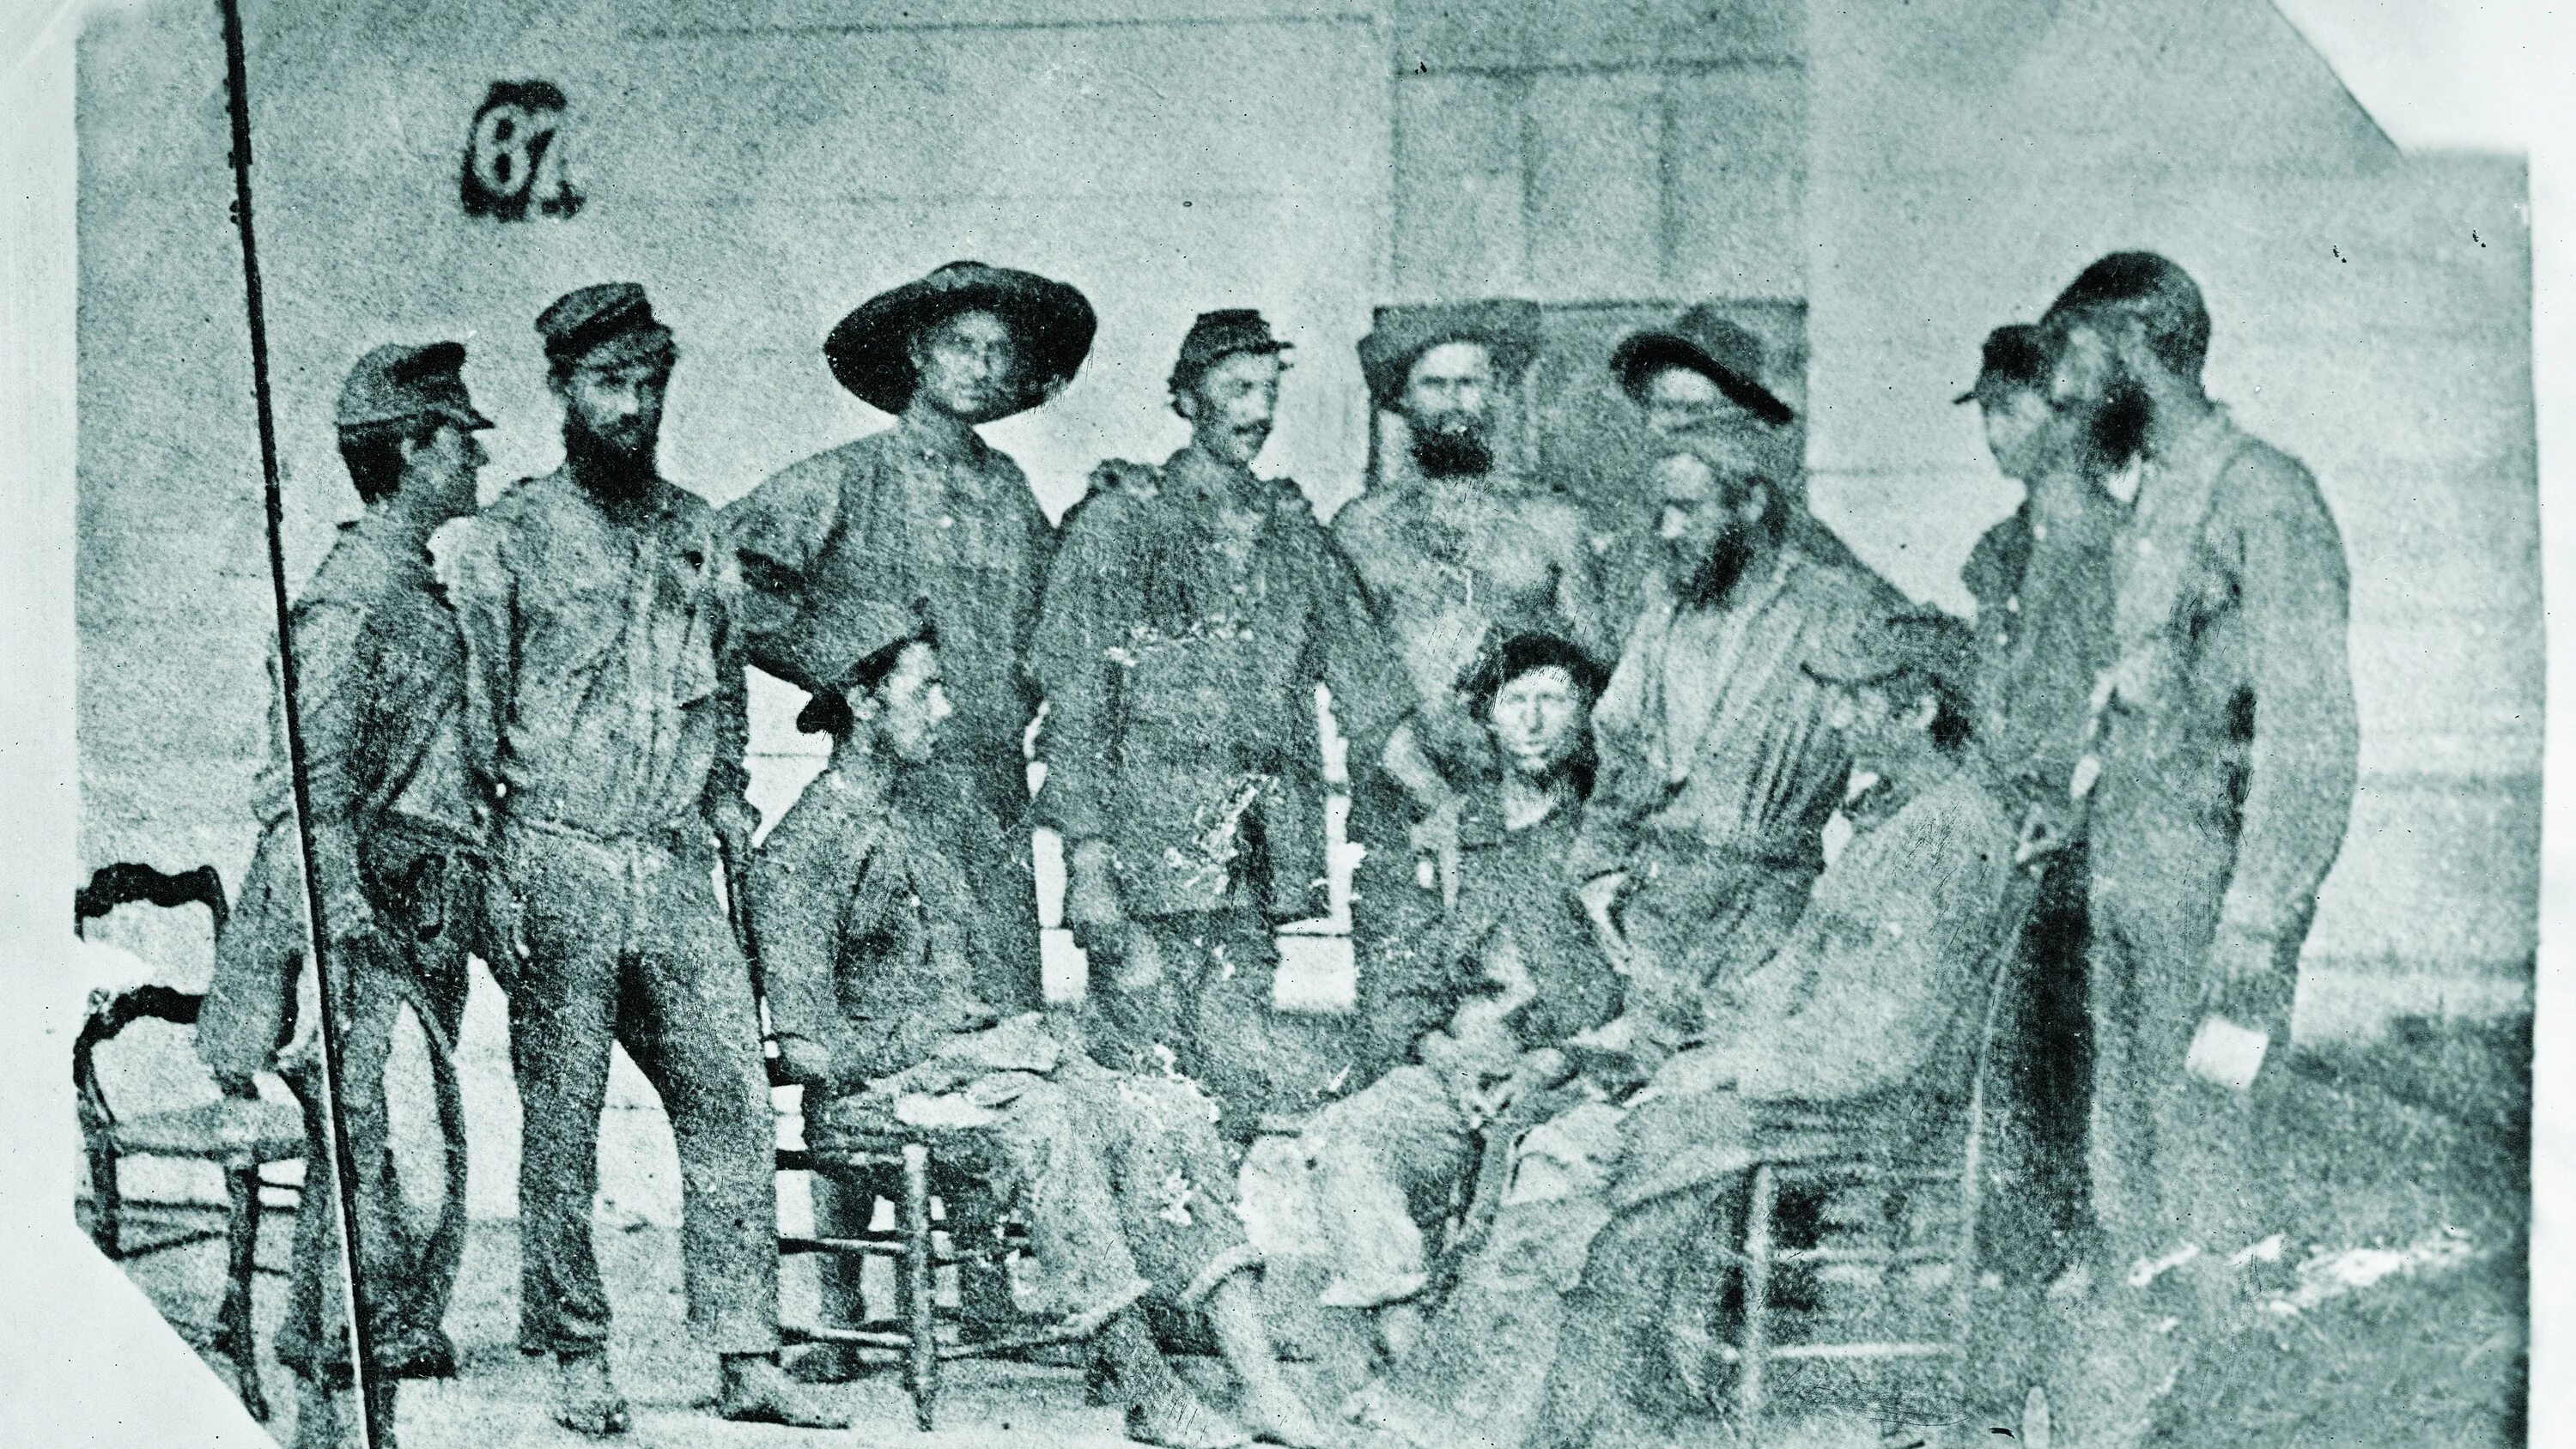 Фото рабов времен гражданской войны. Расовая проблема после гражданской войны в США 19 век.